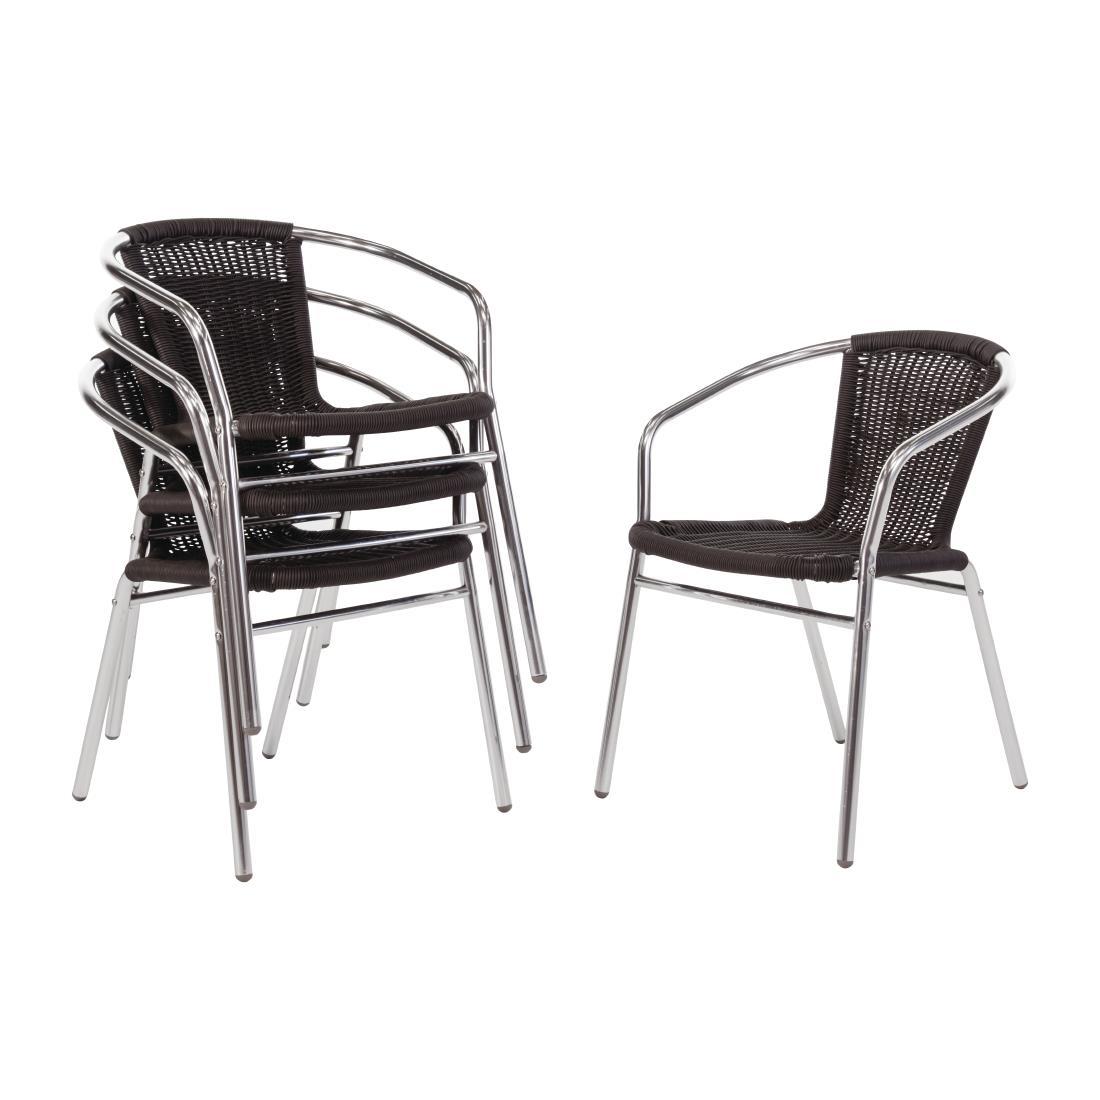 Bolero Aluminium and Black Wicker Chairs Black (Pack of 4) - U507  - 1